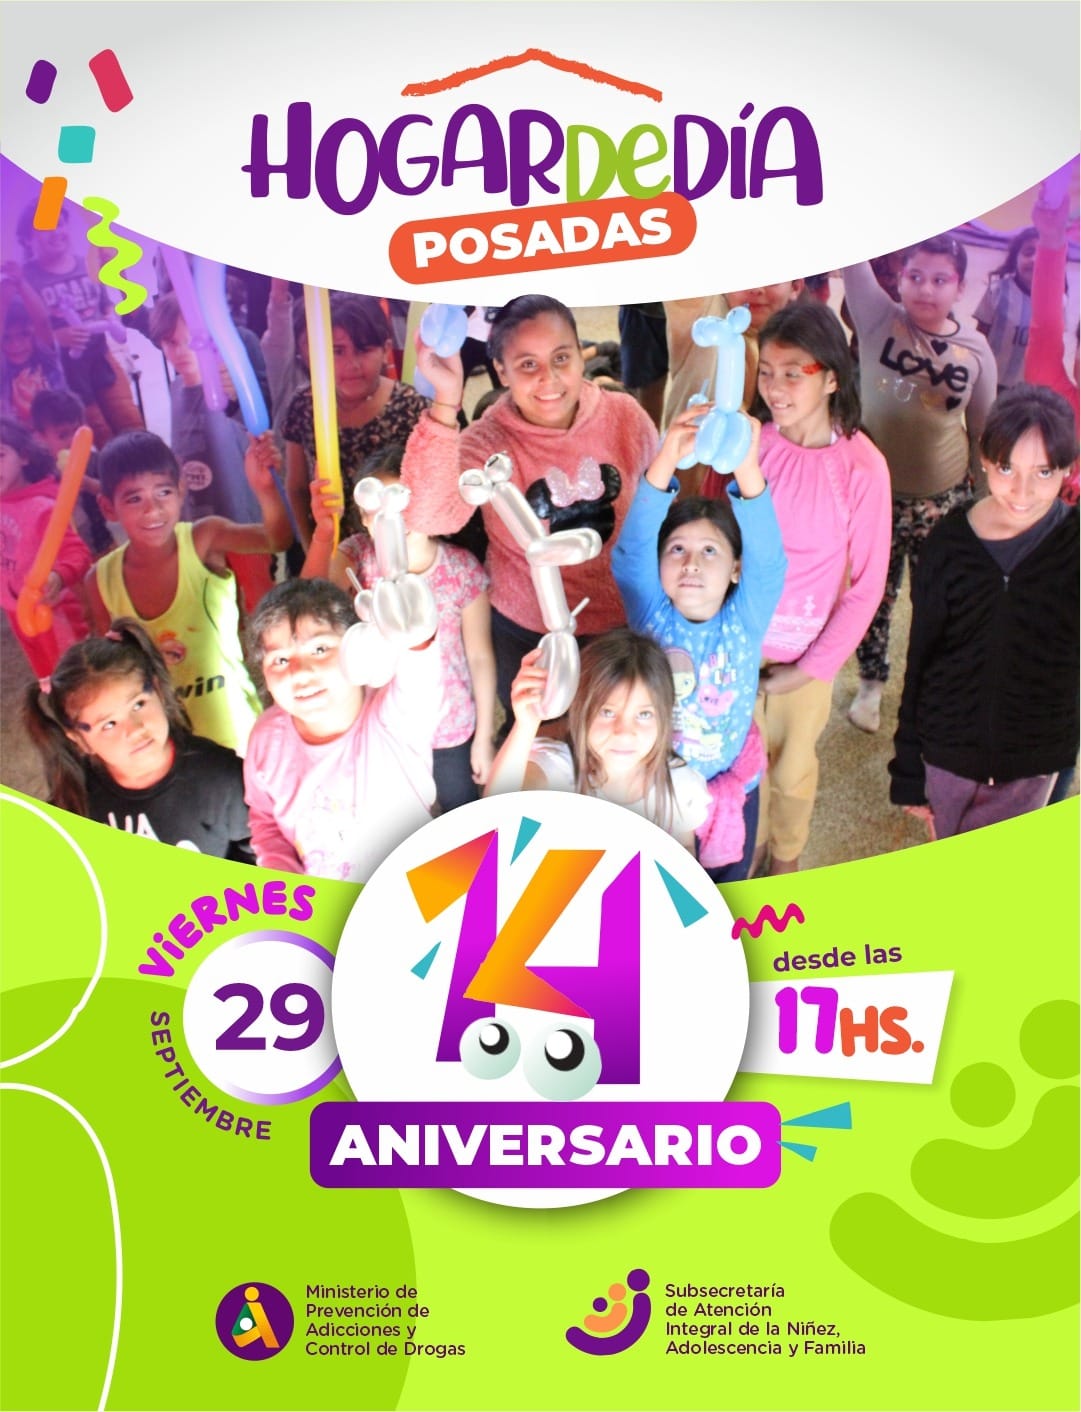 El Hogar de Día de Posadas cumple hoy 14 años y lo celebra con un show musical para las familias